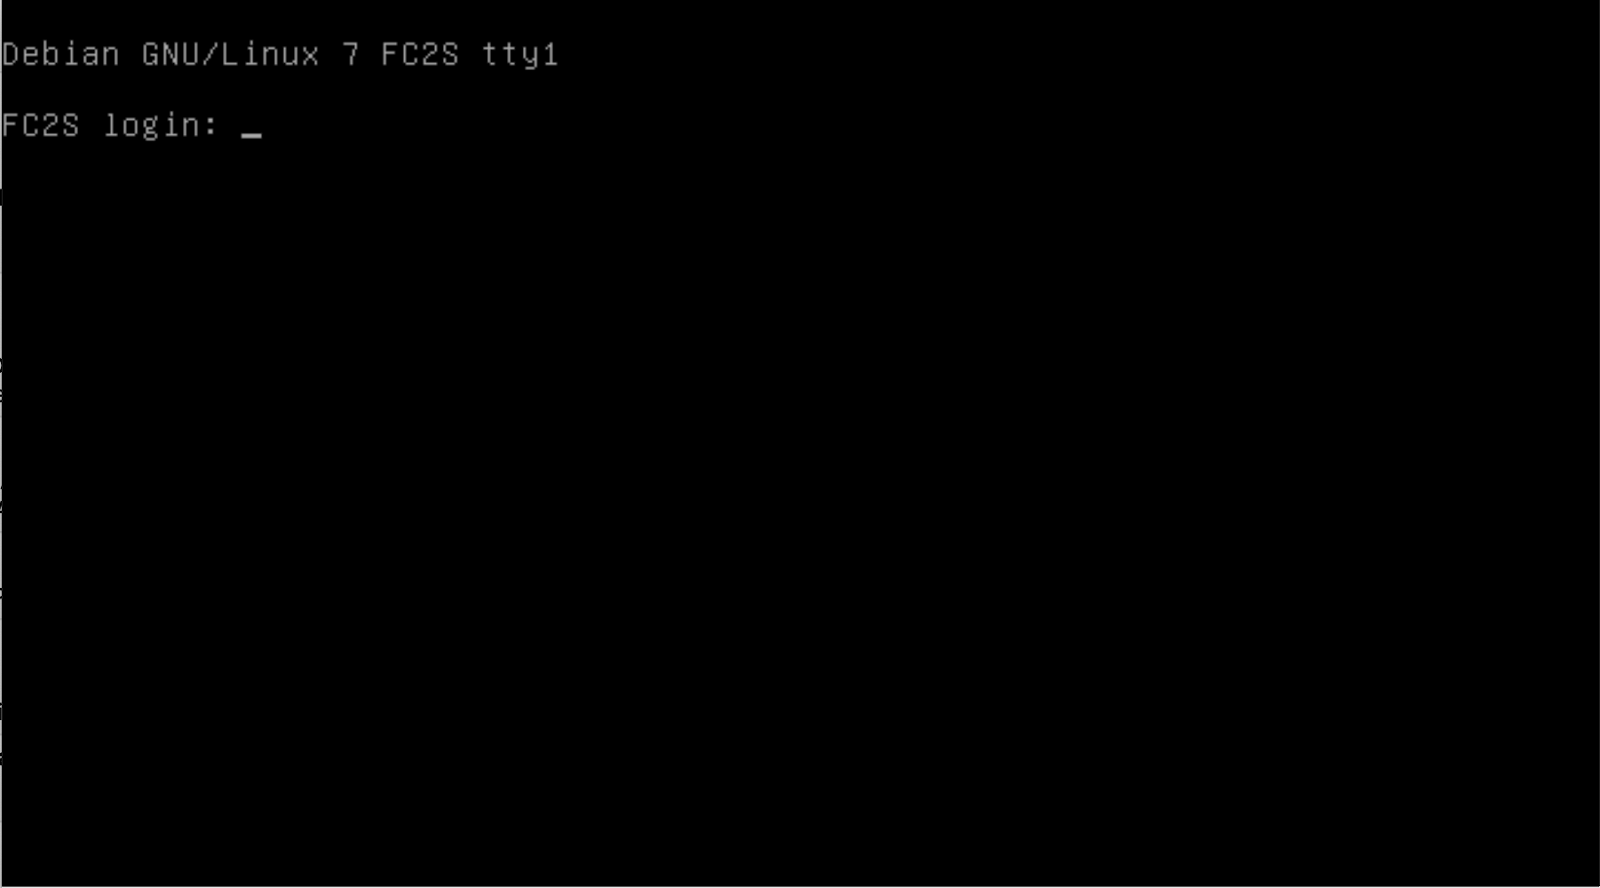 Interface d'une console avec du texte blanc sur fond noir.